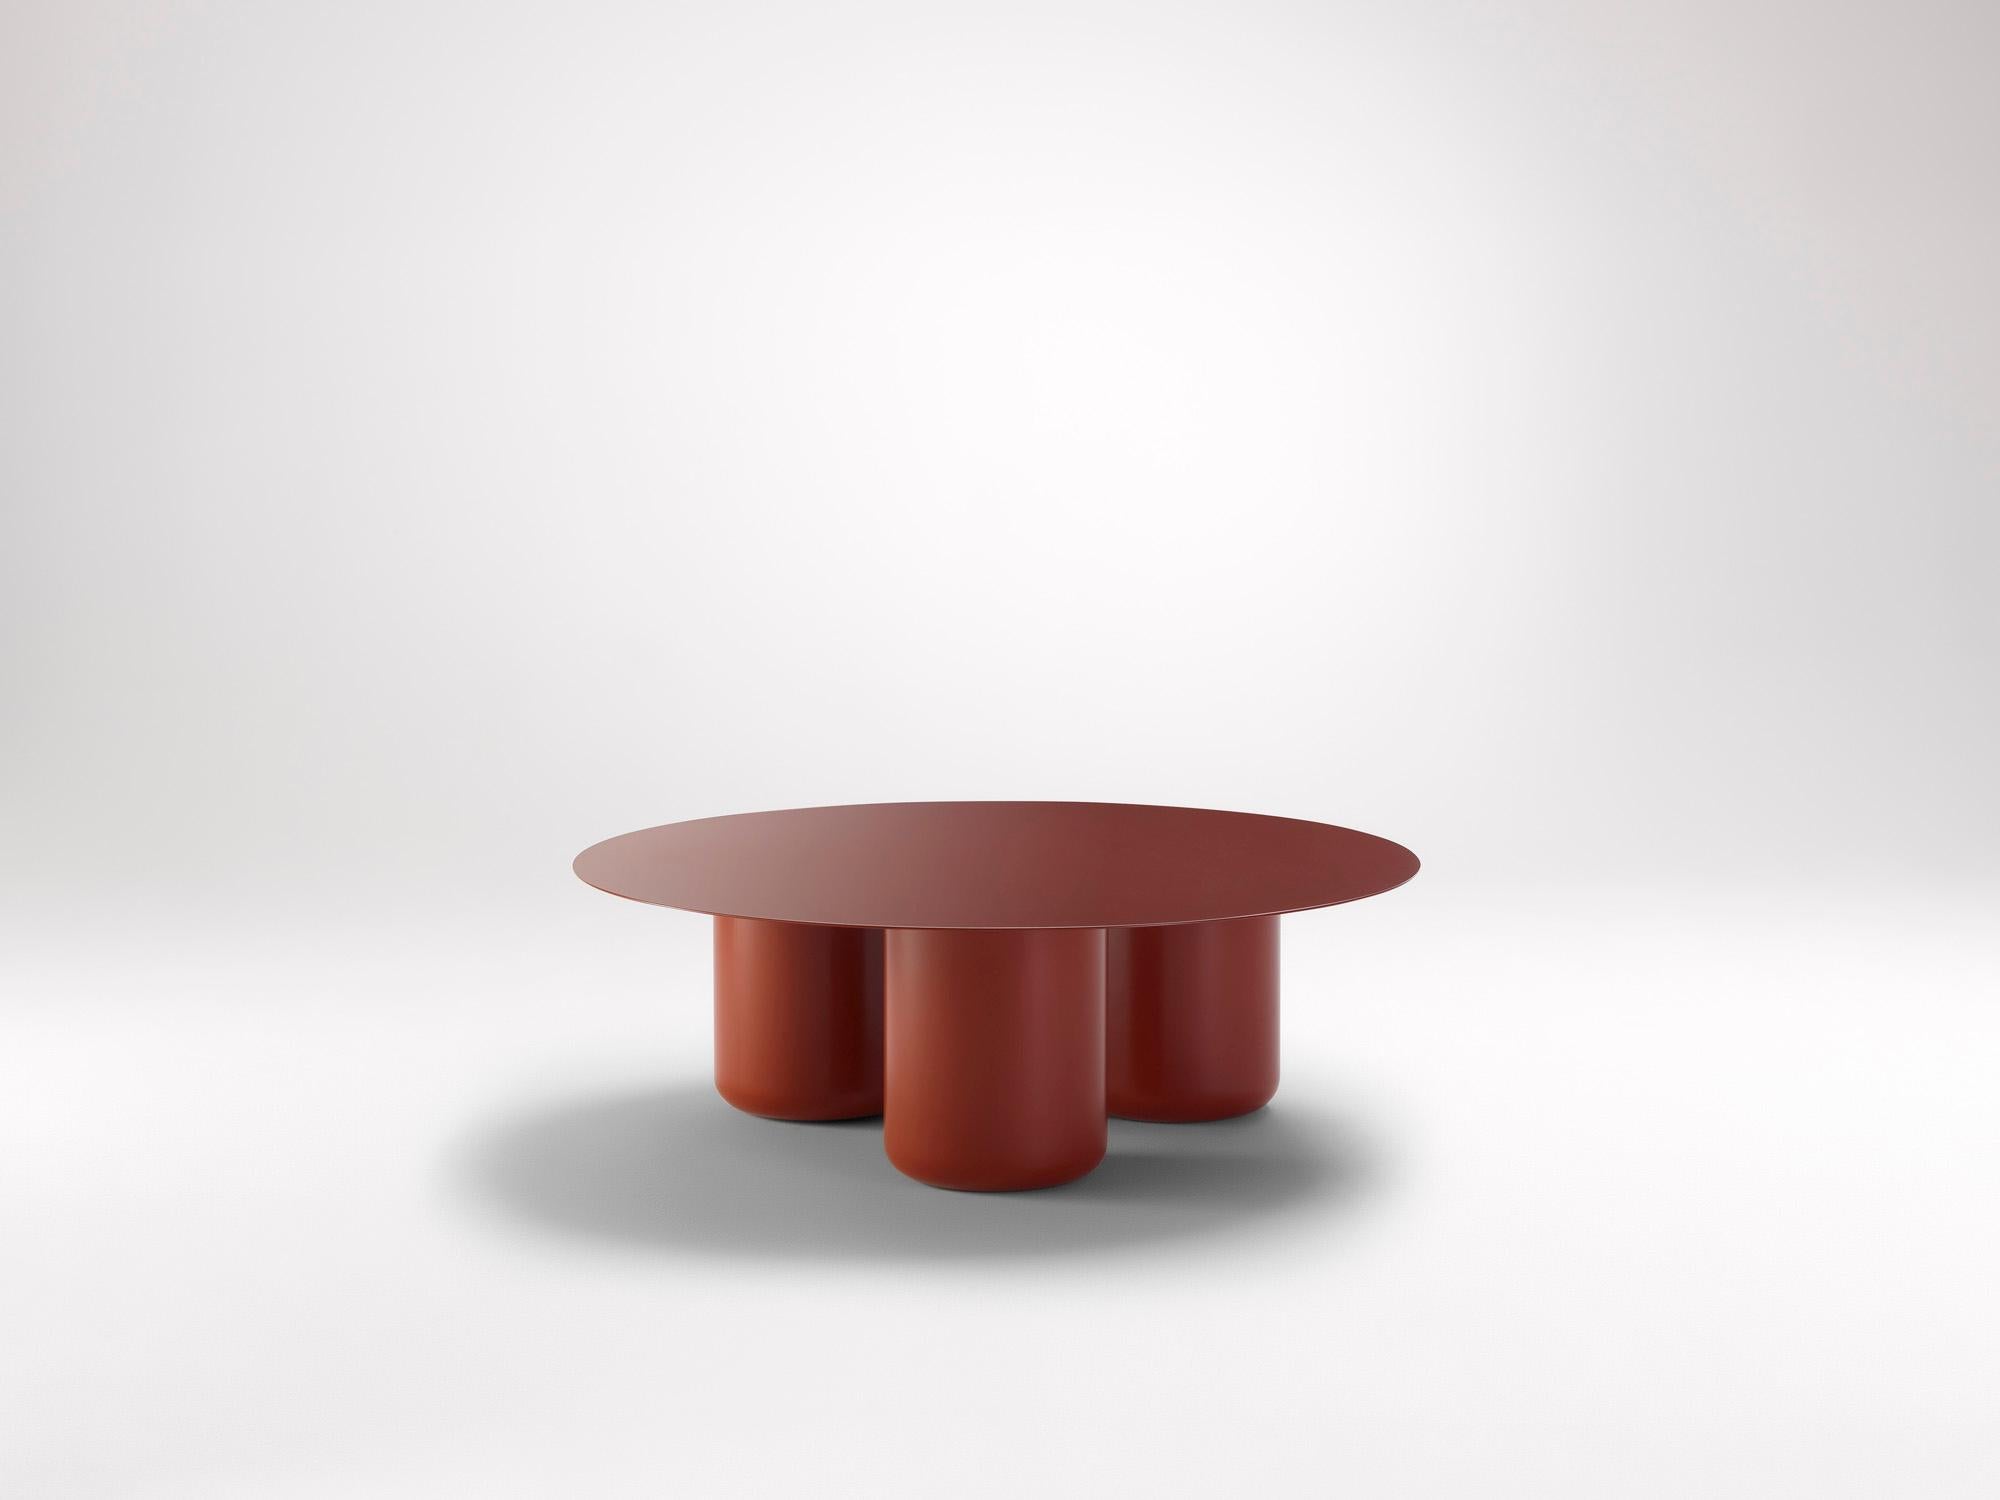 Runder Kopfland-Tisch in Rot von Coco Flip
Abmessungen: D 100 x H 32 / 36 / 40 / 42 cm
MATERIALIEN: Baustahl, pulverbeschichtet mit Zinkgrundierung. 
Gewicht: 34 kg

Coco Flip ist ein Studio für Möbel- und Beleuchtungsdesign in Melbourne, das von